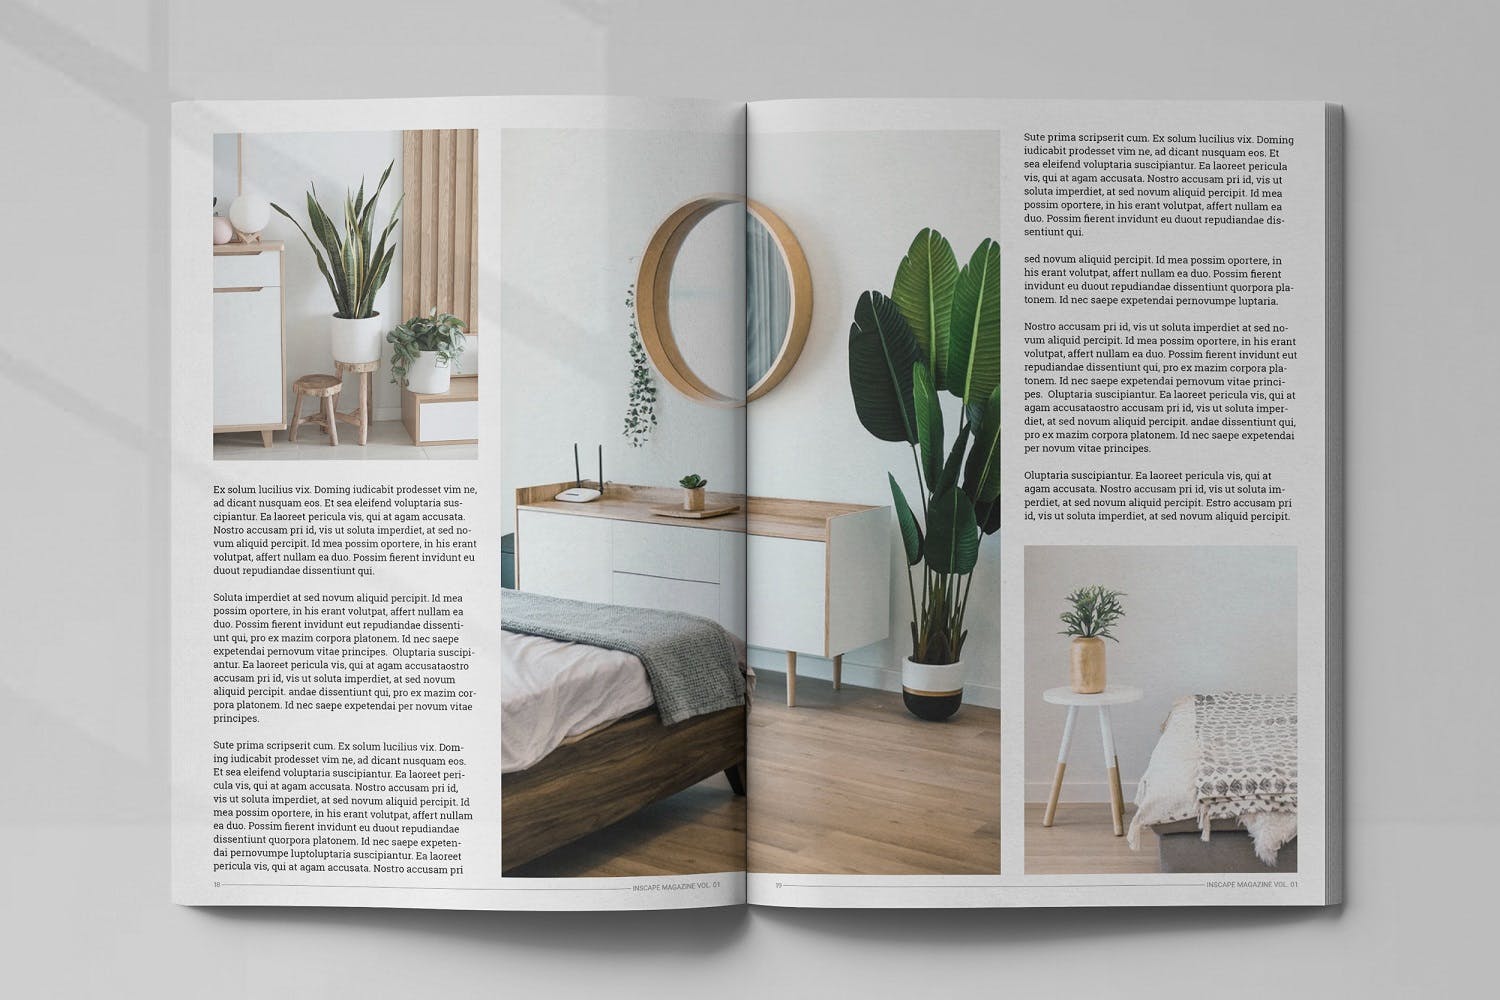 室内设计主题蚂蚁素材精选杂志排版设计模板 Inscape Interior Magazine插图(9)